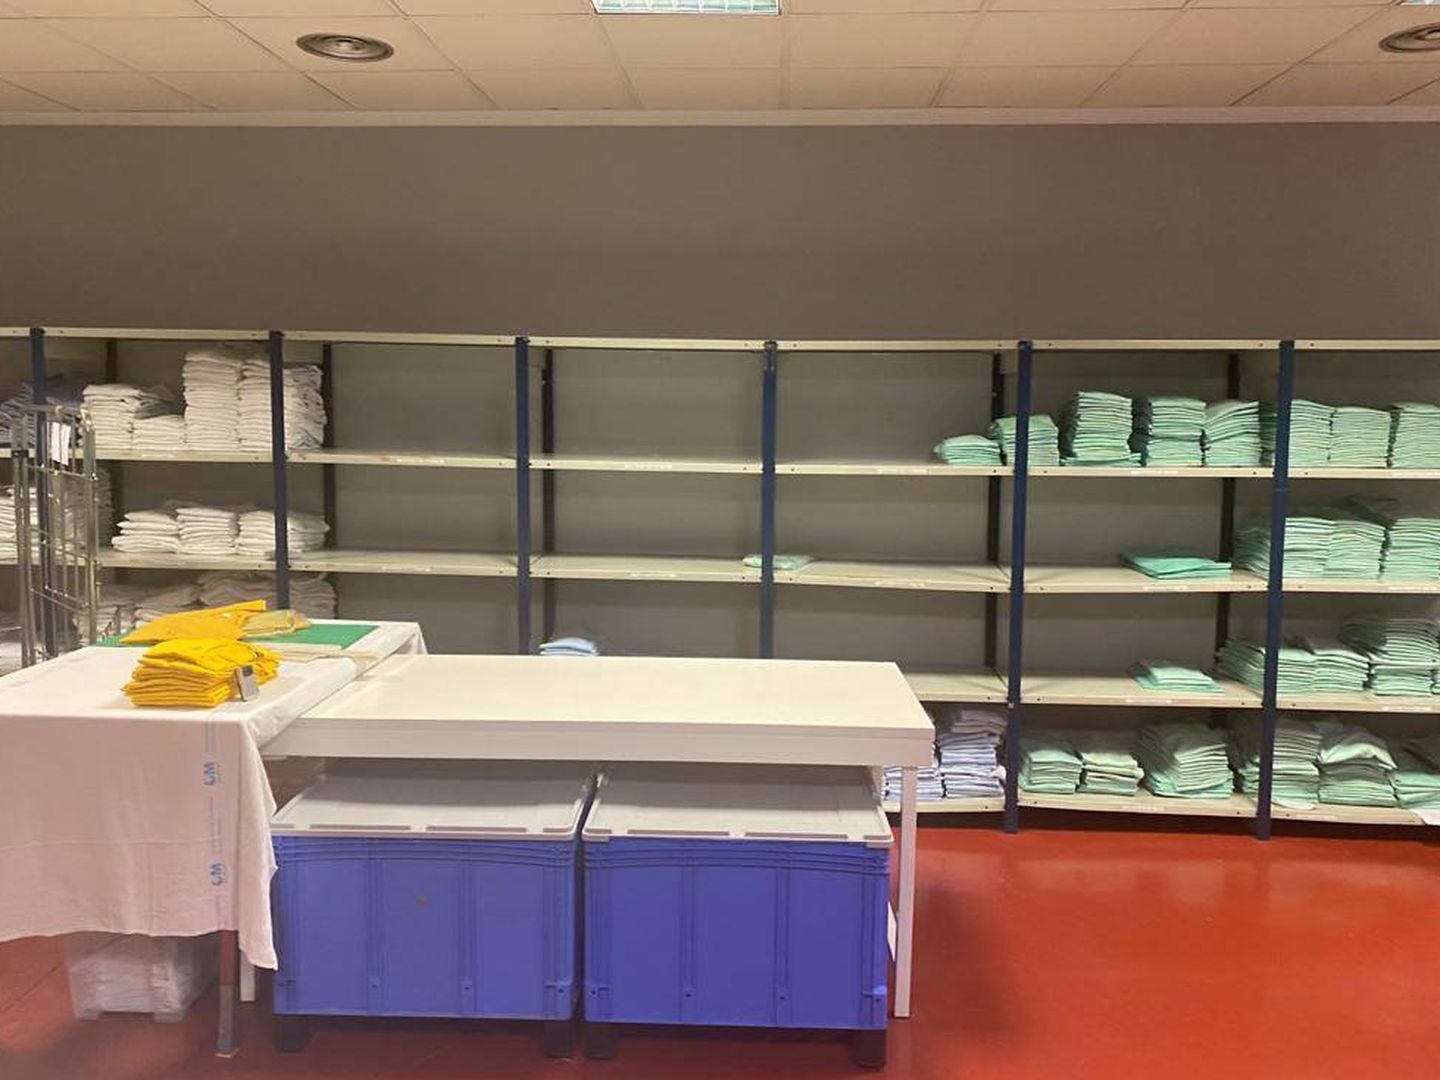 Así estaba uno de los almacenes de uniformes del hospital Ramón y Cajal este martes.